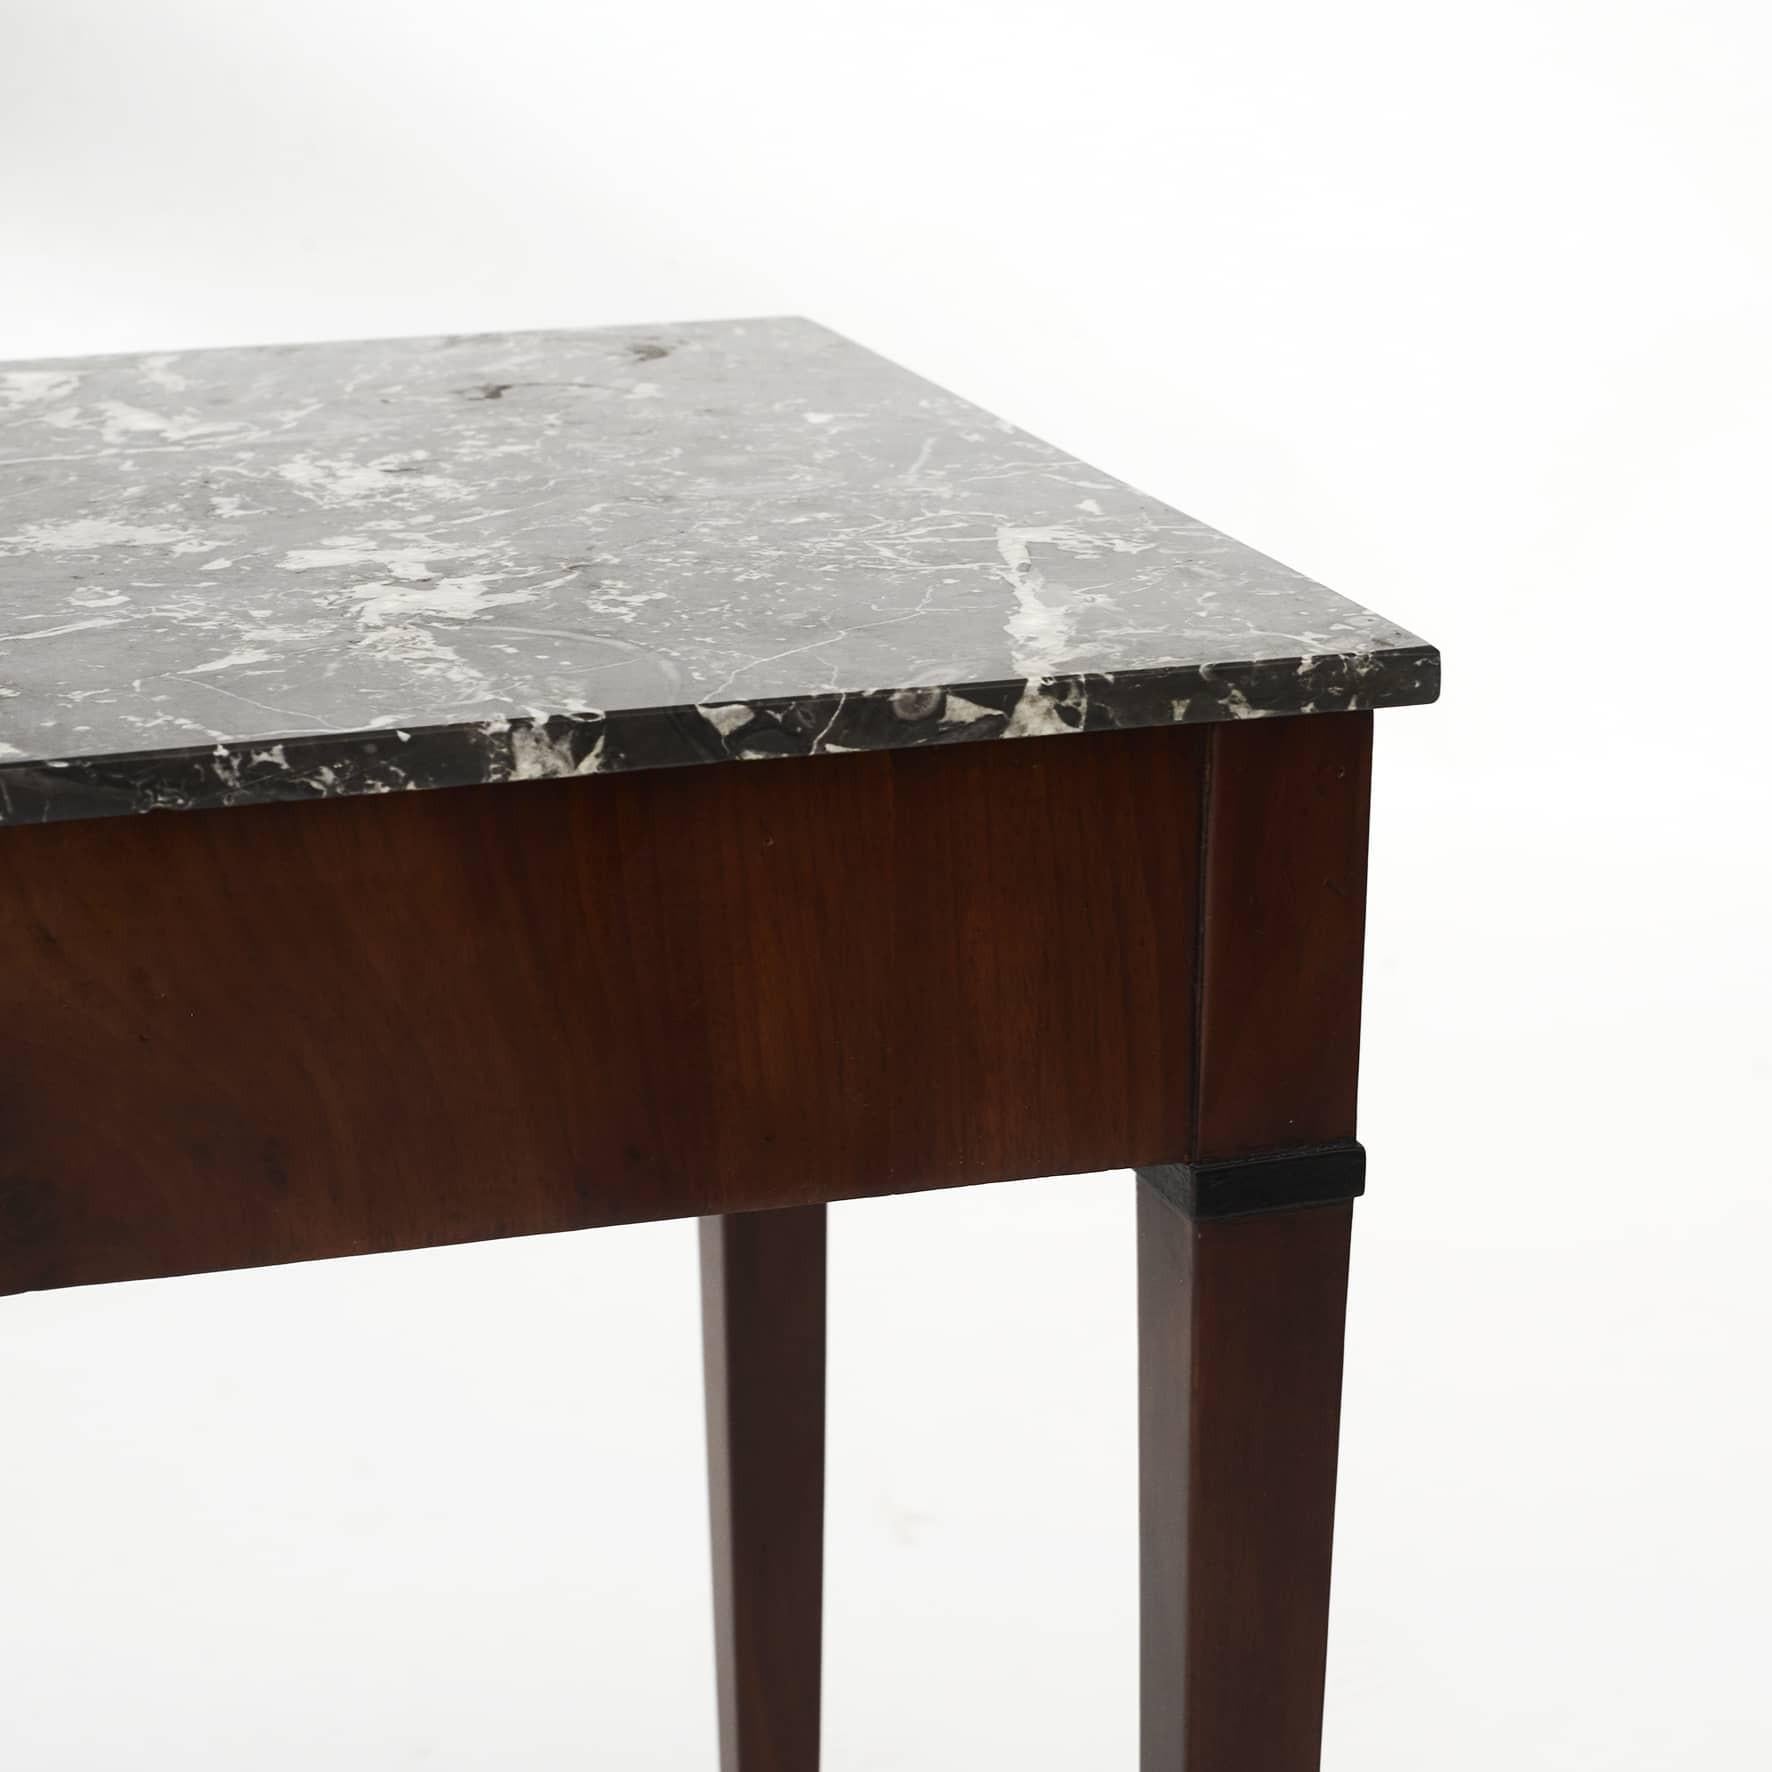 Eleganter dänischer Empire-Beistelltisch aus Mahagoni.
Tischplatte aus belgischem grauem Marmor.
Elegante Intarsien aus dunklem Hartholz auf den Beinen.

Kopenhagen ca. 1810.